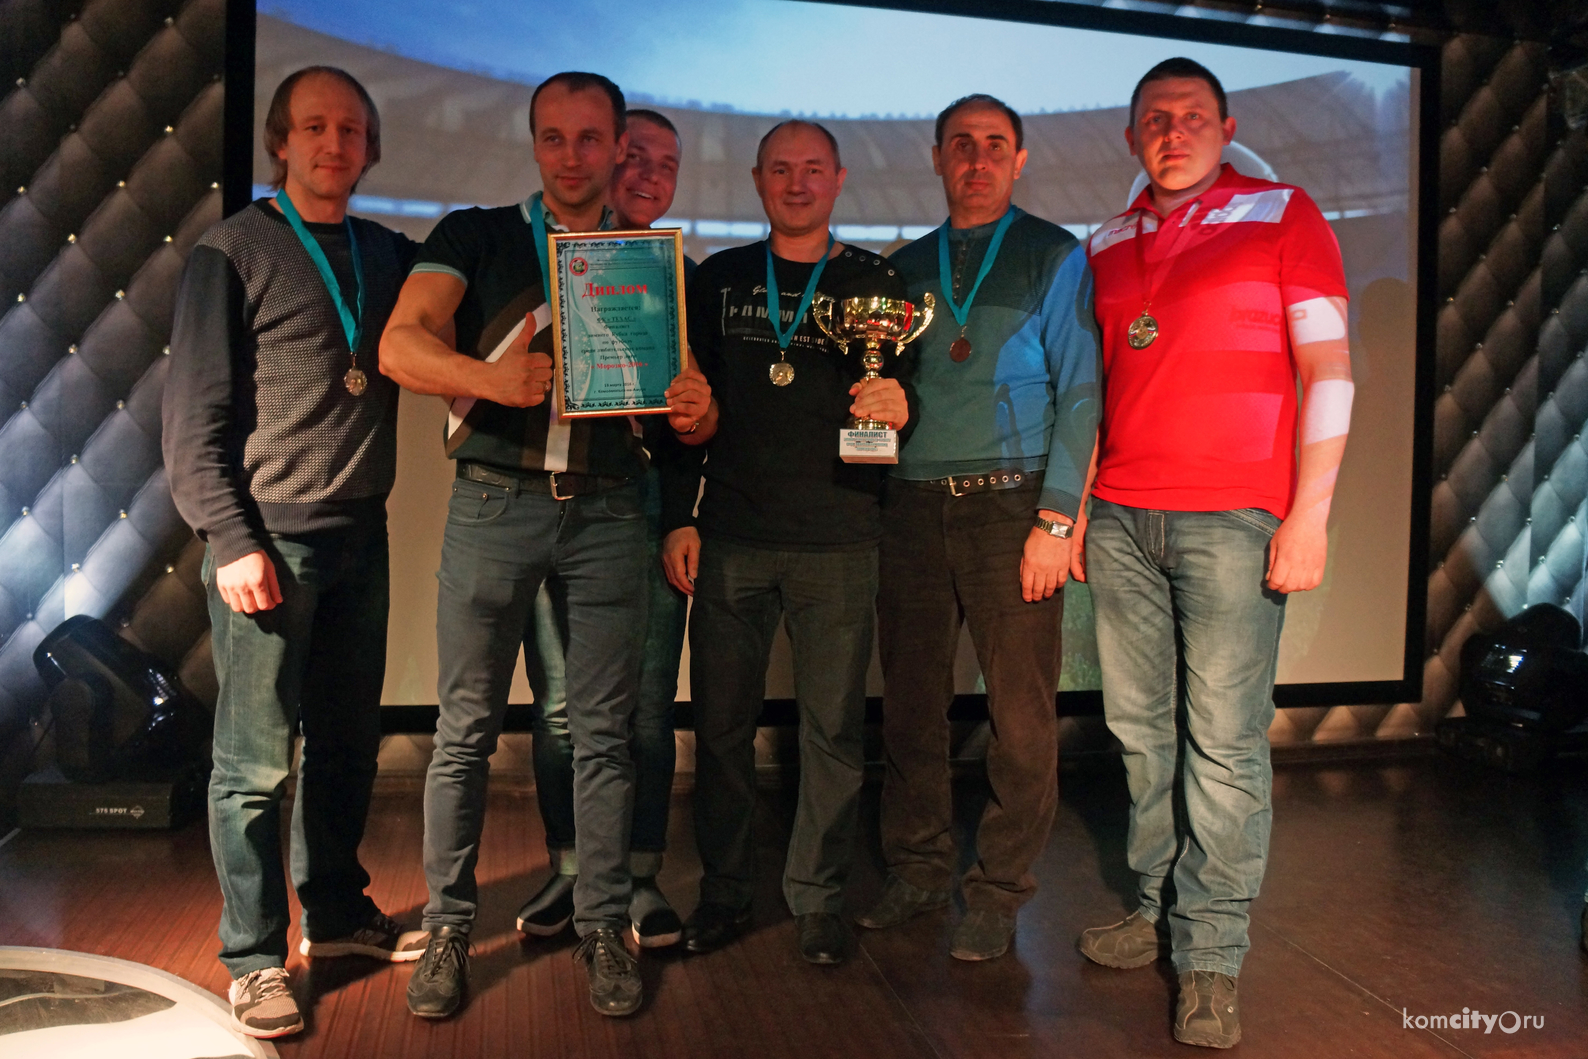 Победители первенства по мини-футболу «Морозко 2016» получили заслуженные награды